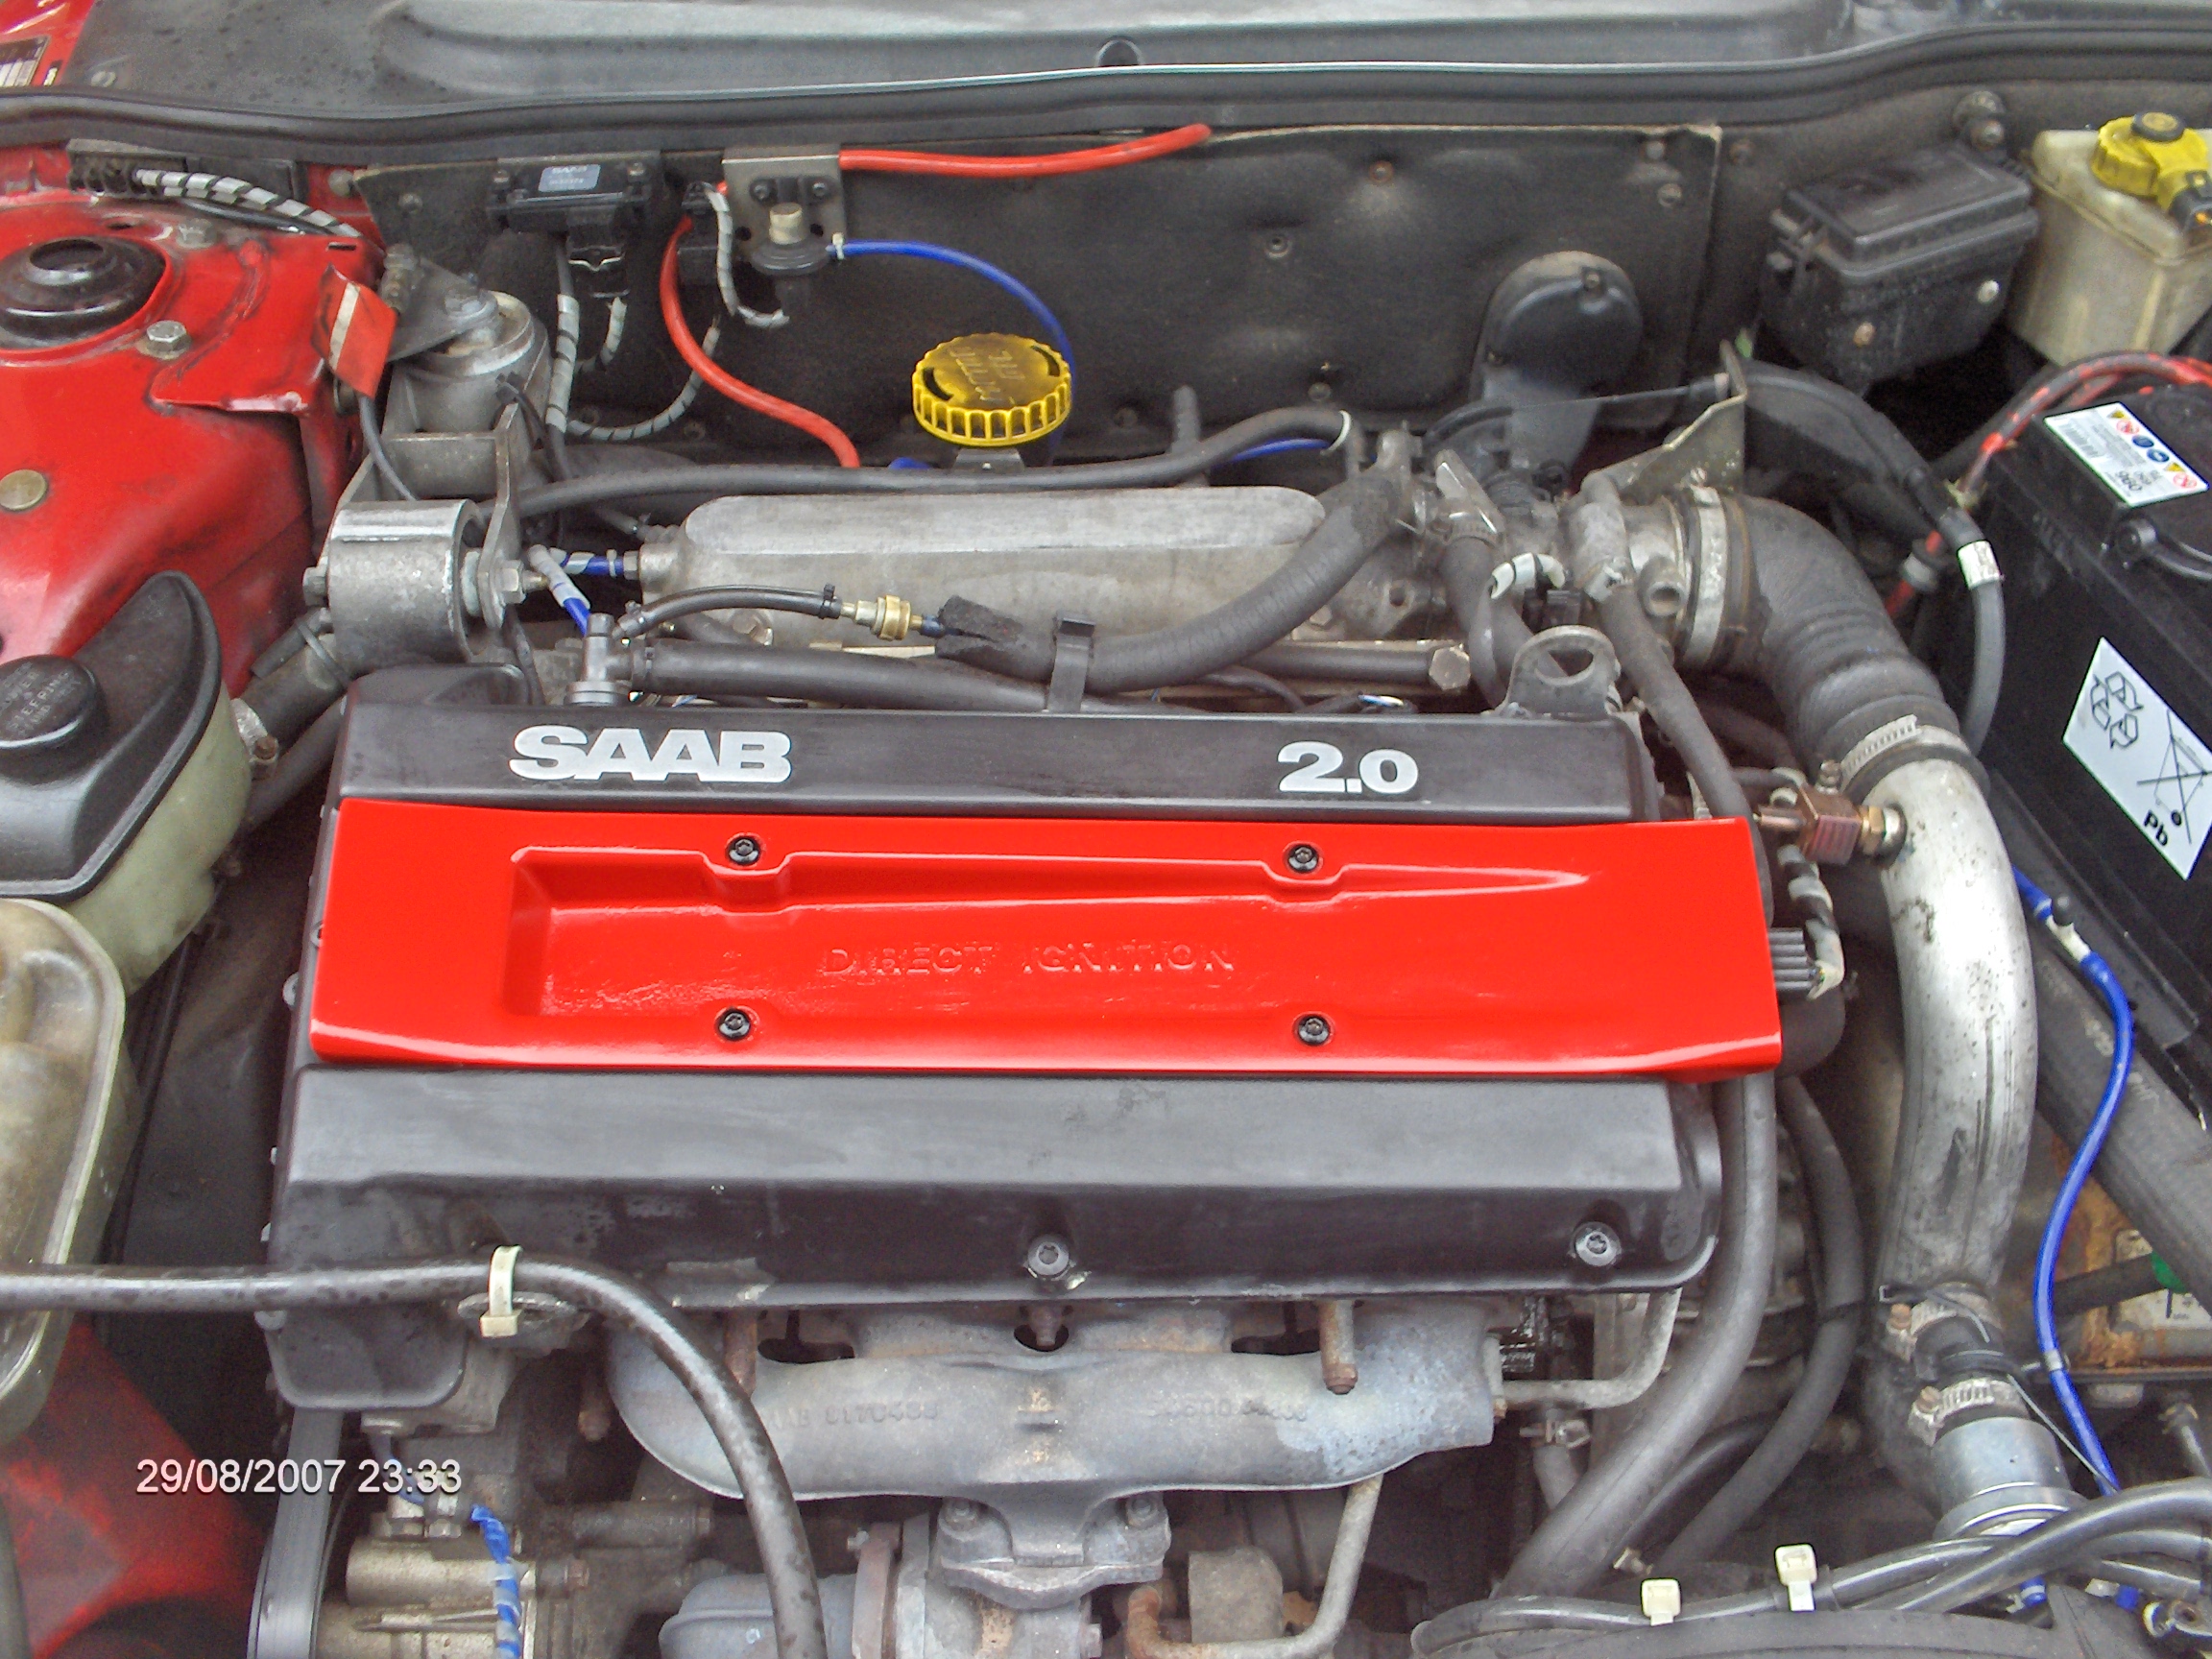 SAAB - 9000 - CS - 2.0 lpt - Auto - 1997 - Motor. Engine Bay